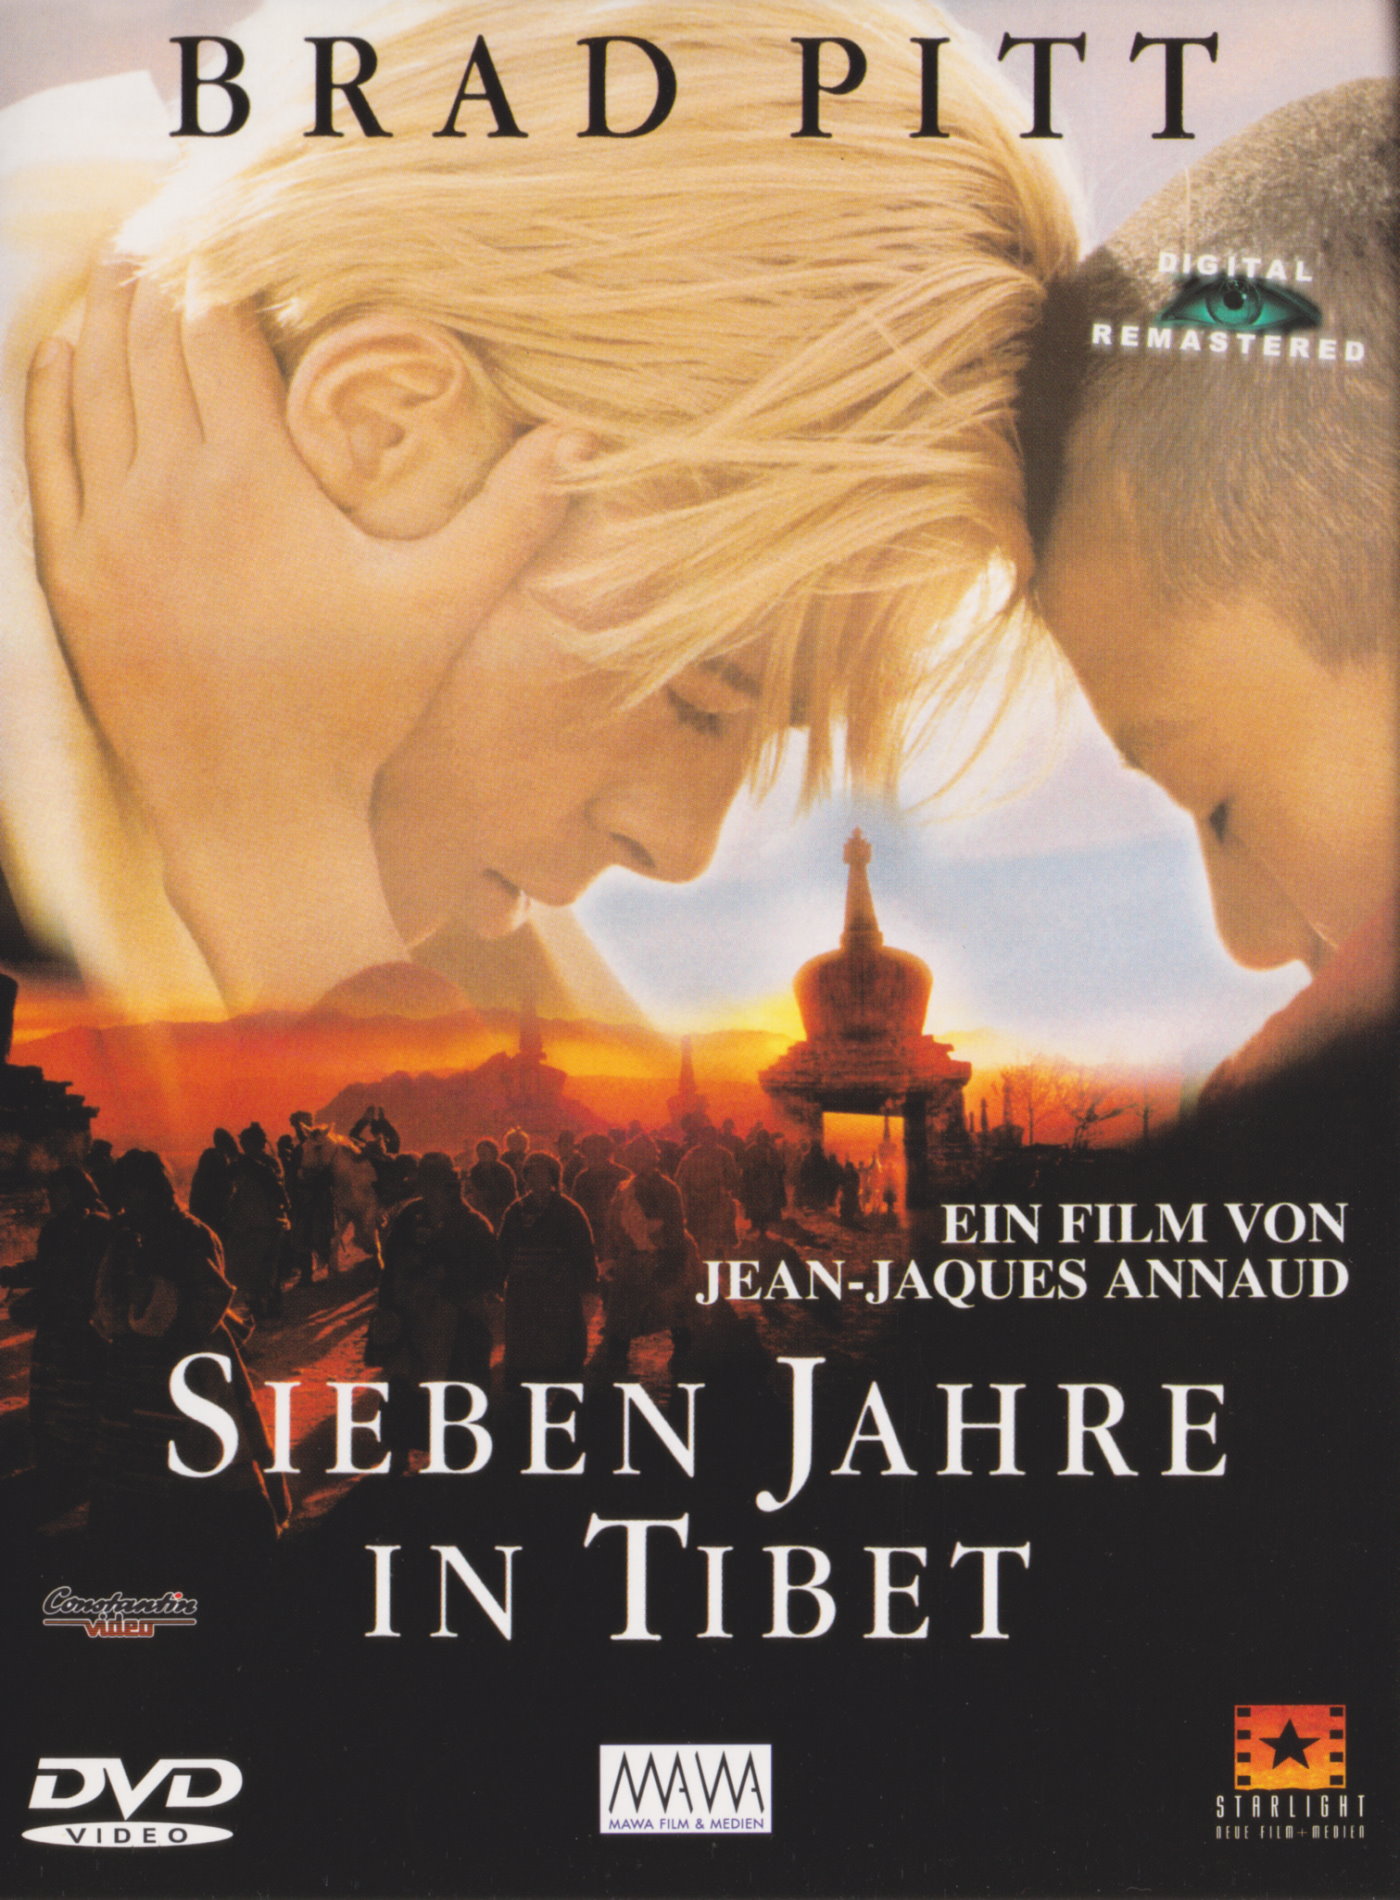 Cover - Sieben Jahre in Tibet.jpg